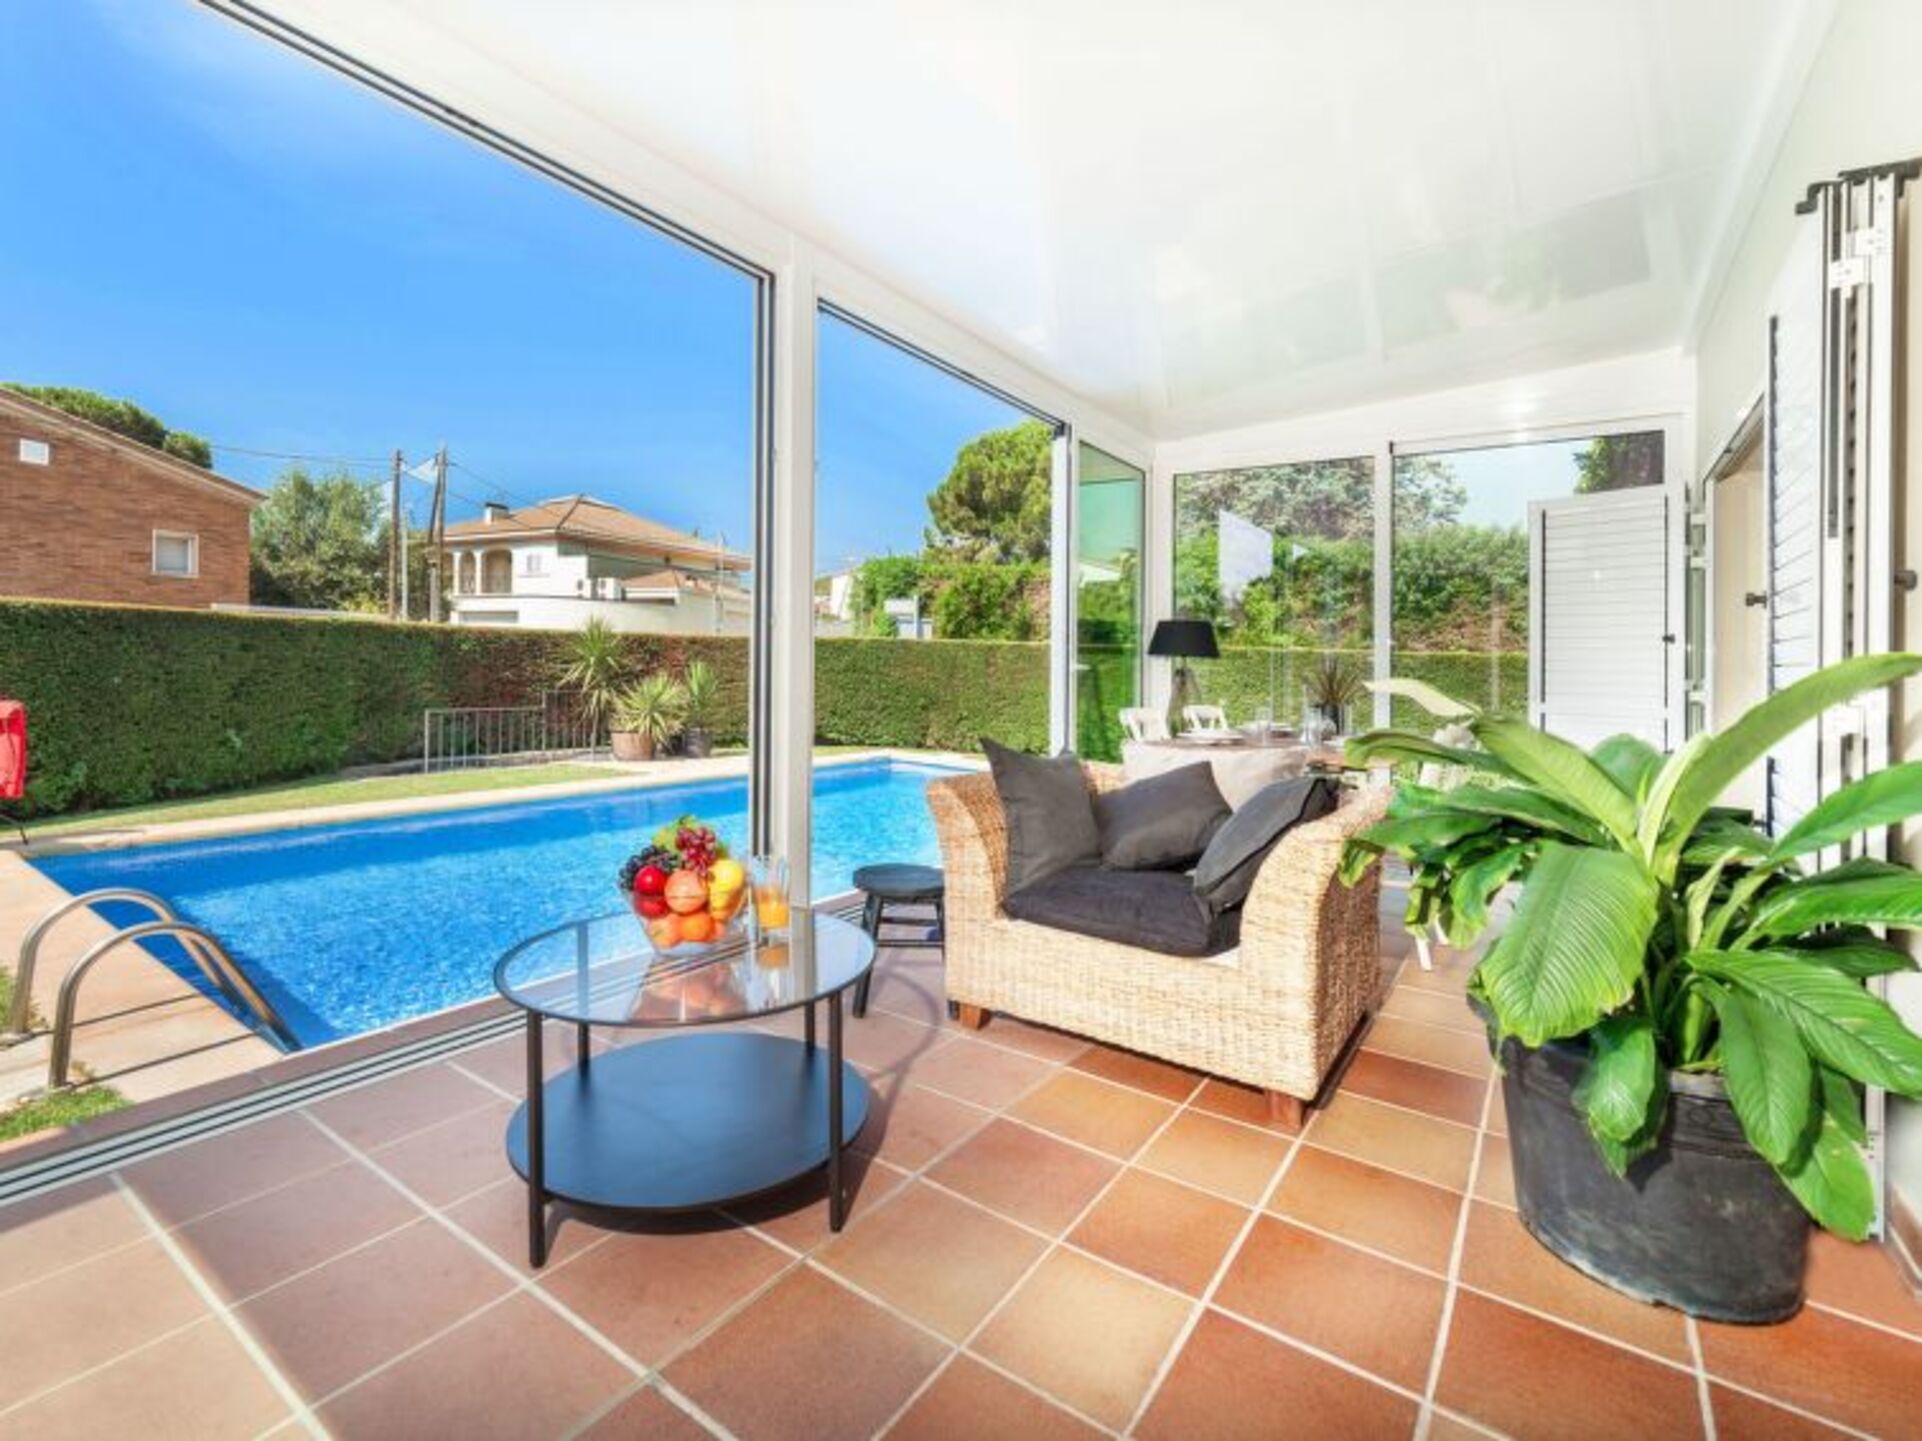 Property Image 2 - The Ultimate Villa in an Ideal Location, Costa Brava Villa 1032